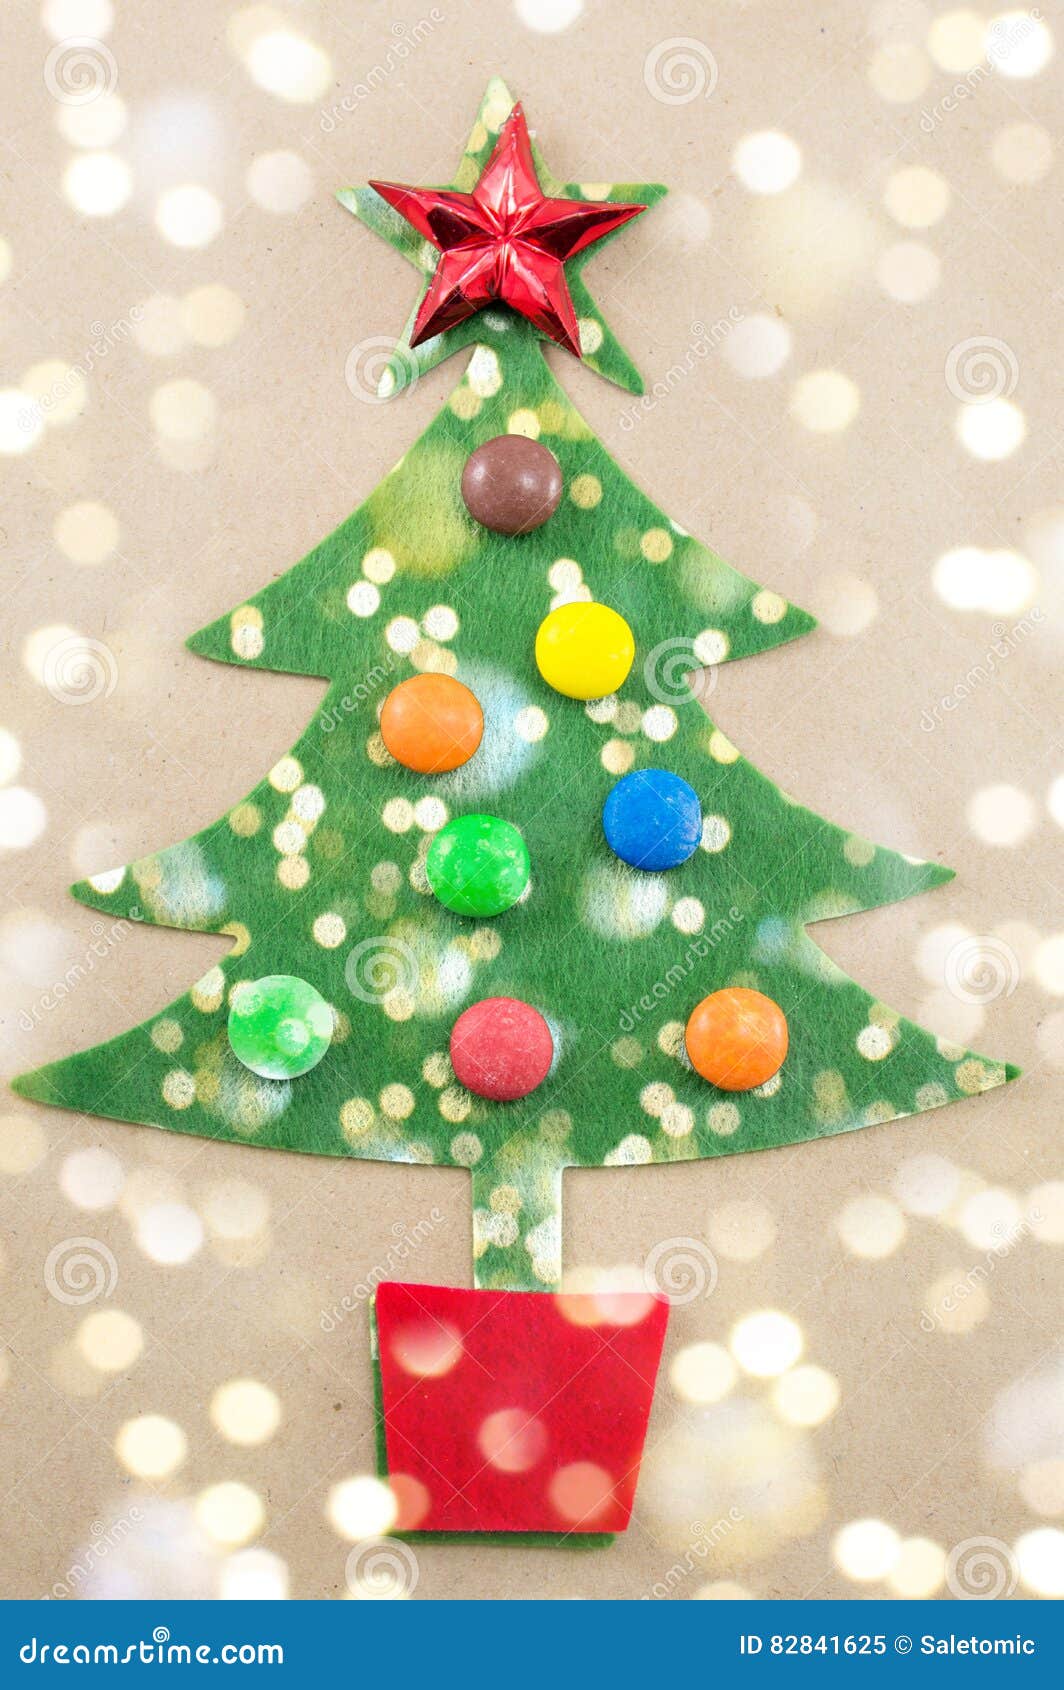 Árvore De Natal Decorada Com Bombons Doces Imagem de Stock - Imagem de  silhueta, lazer: 82841625